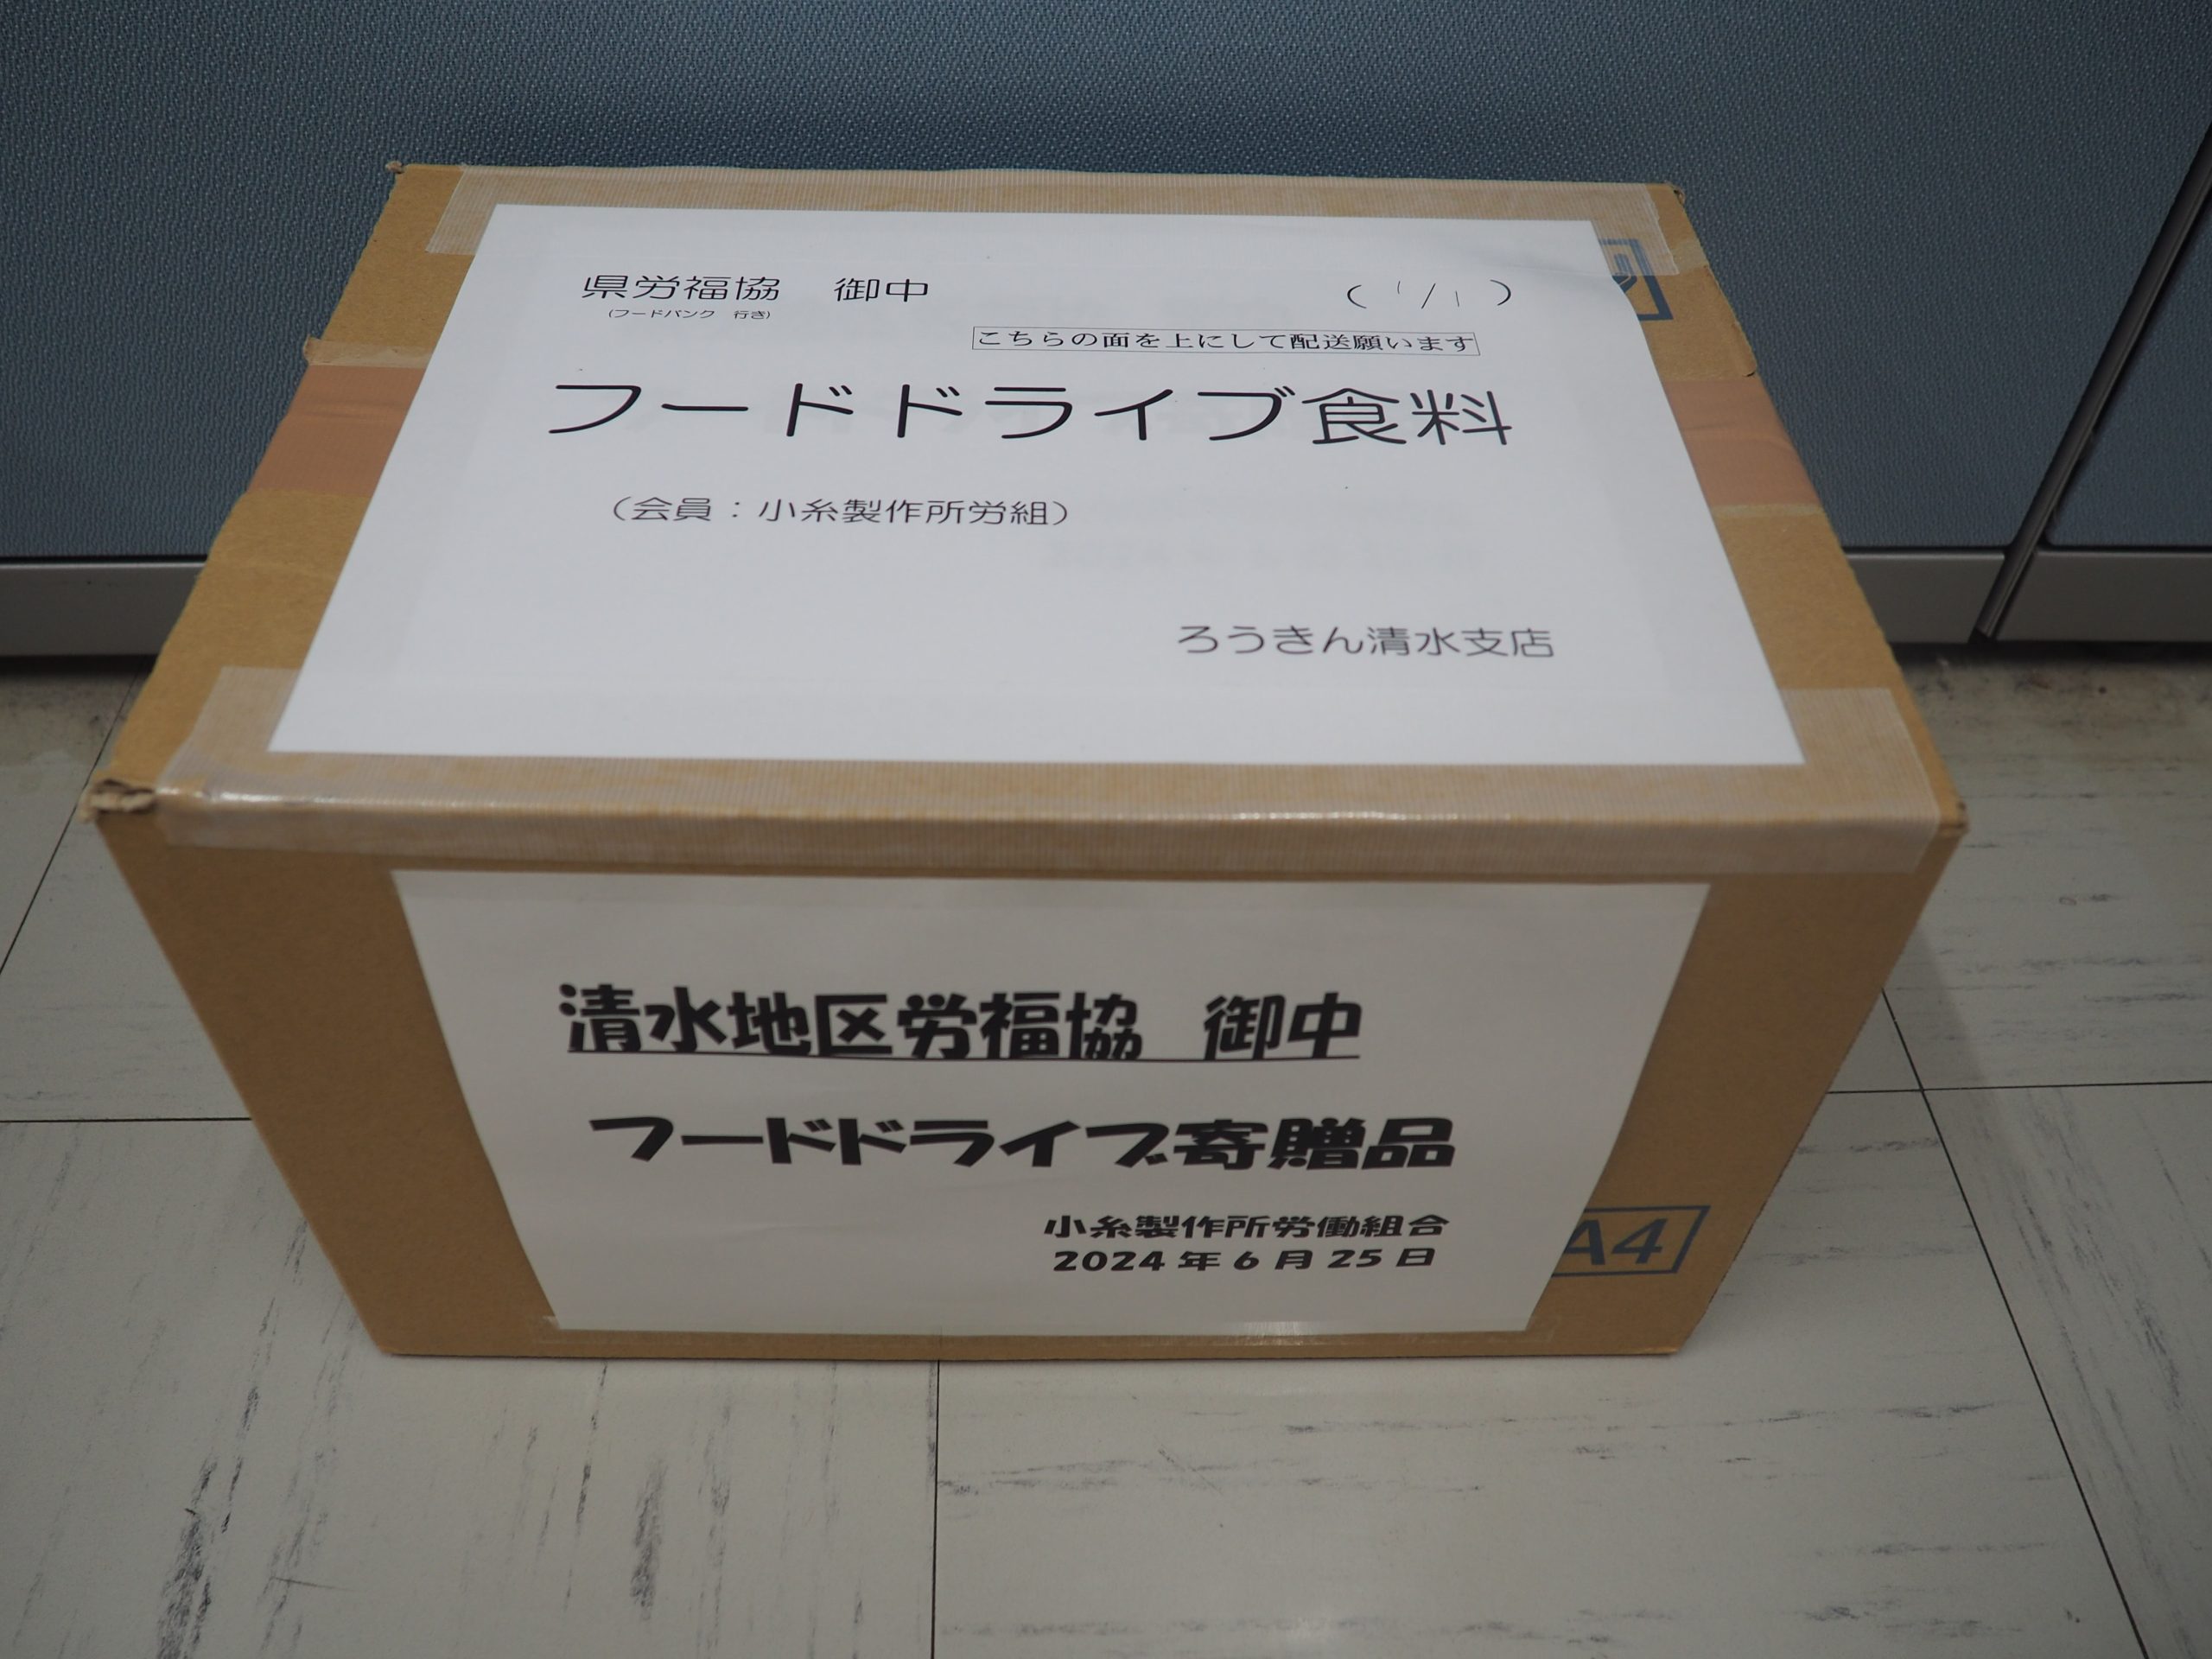 小糸製作所労働組合様・全矢崎労働組合鷲津支部様から食品を提供いただきました。